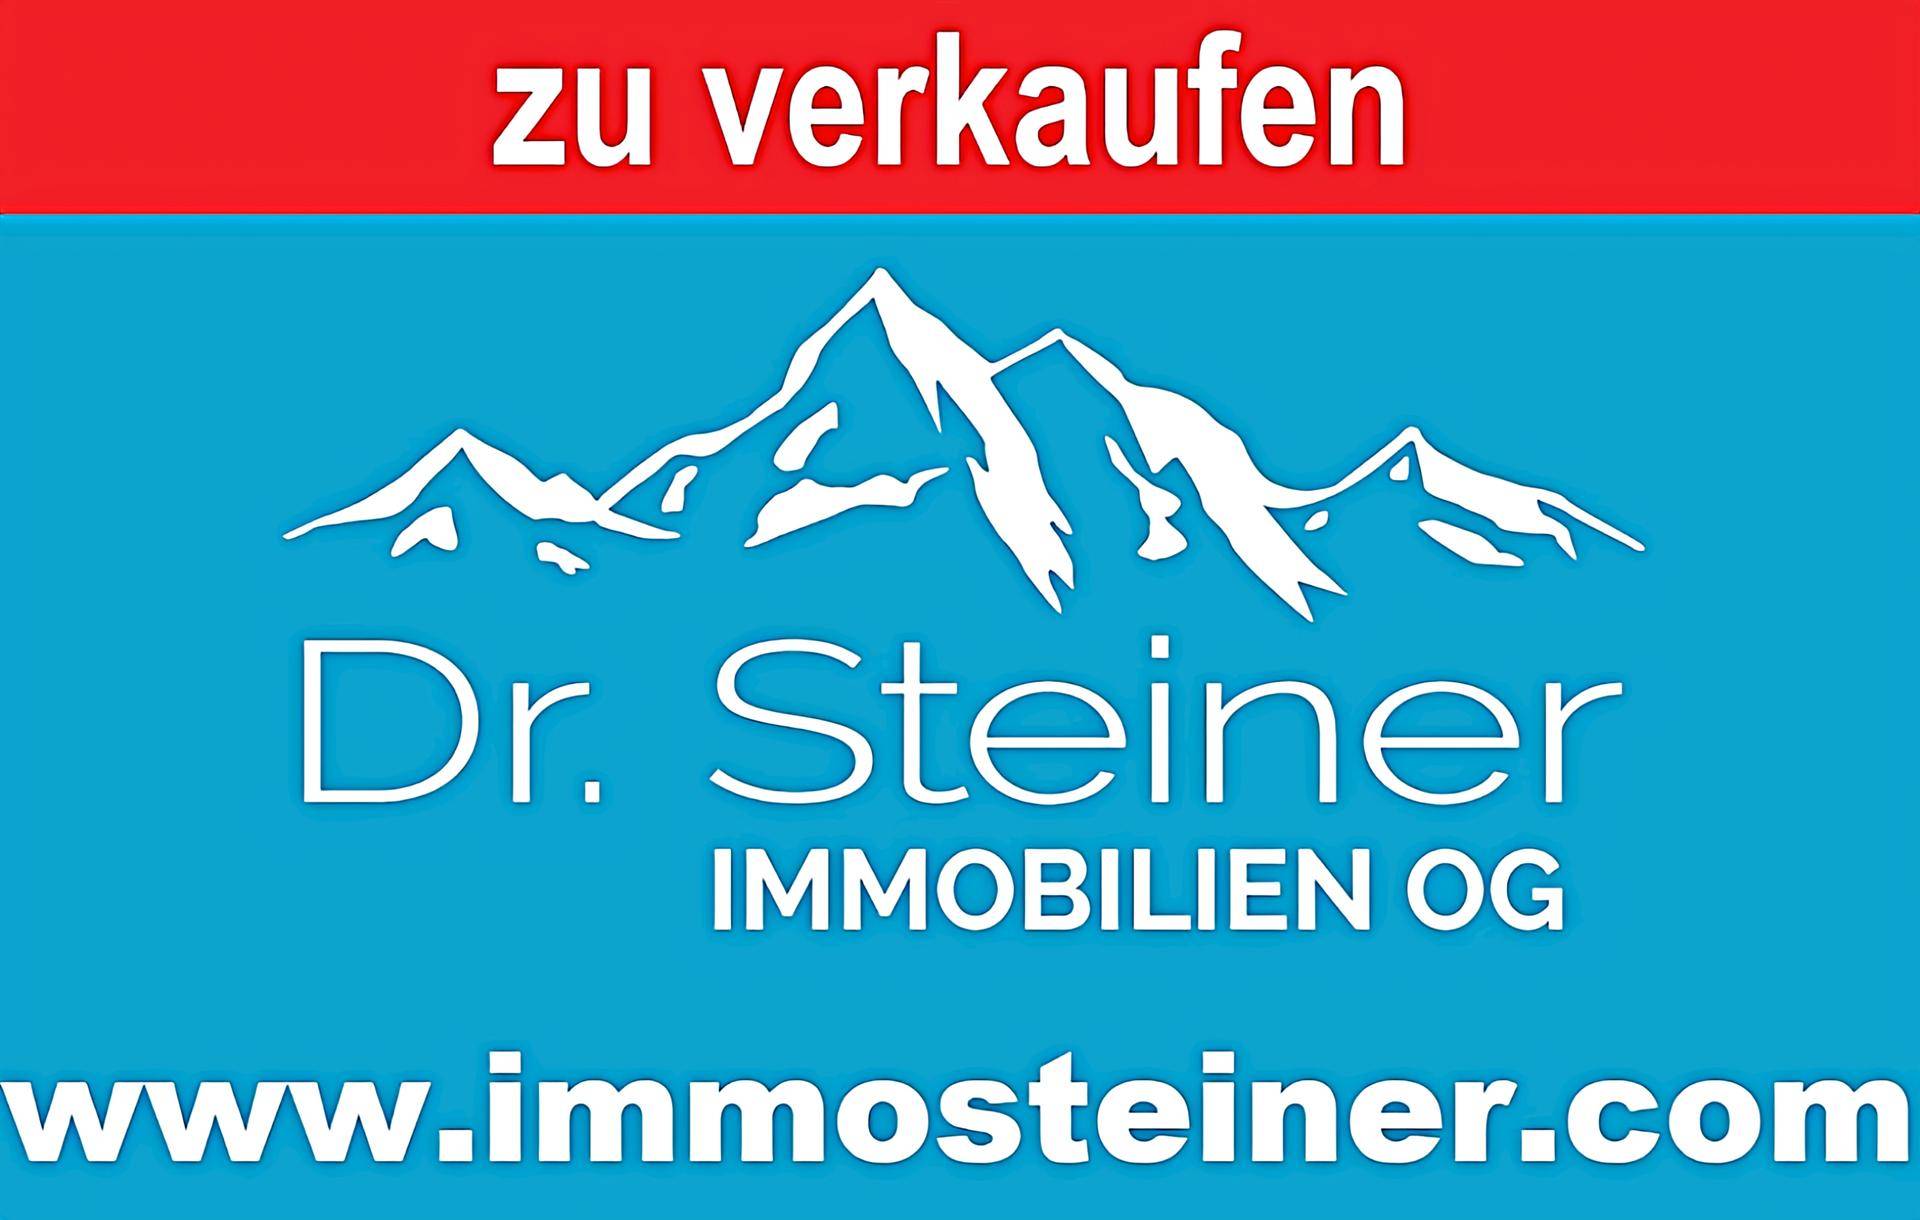 www.immosteiner.com